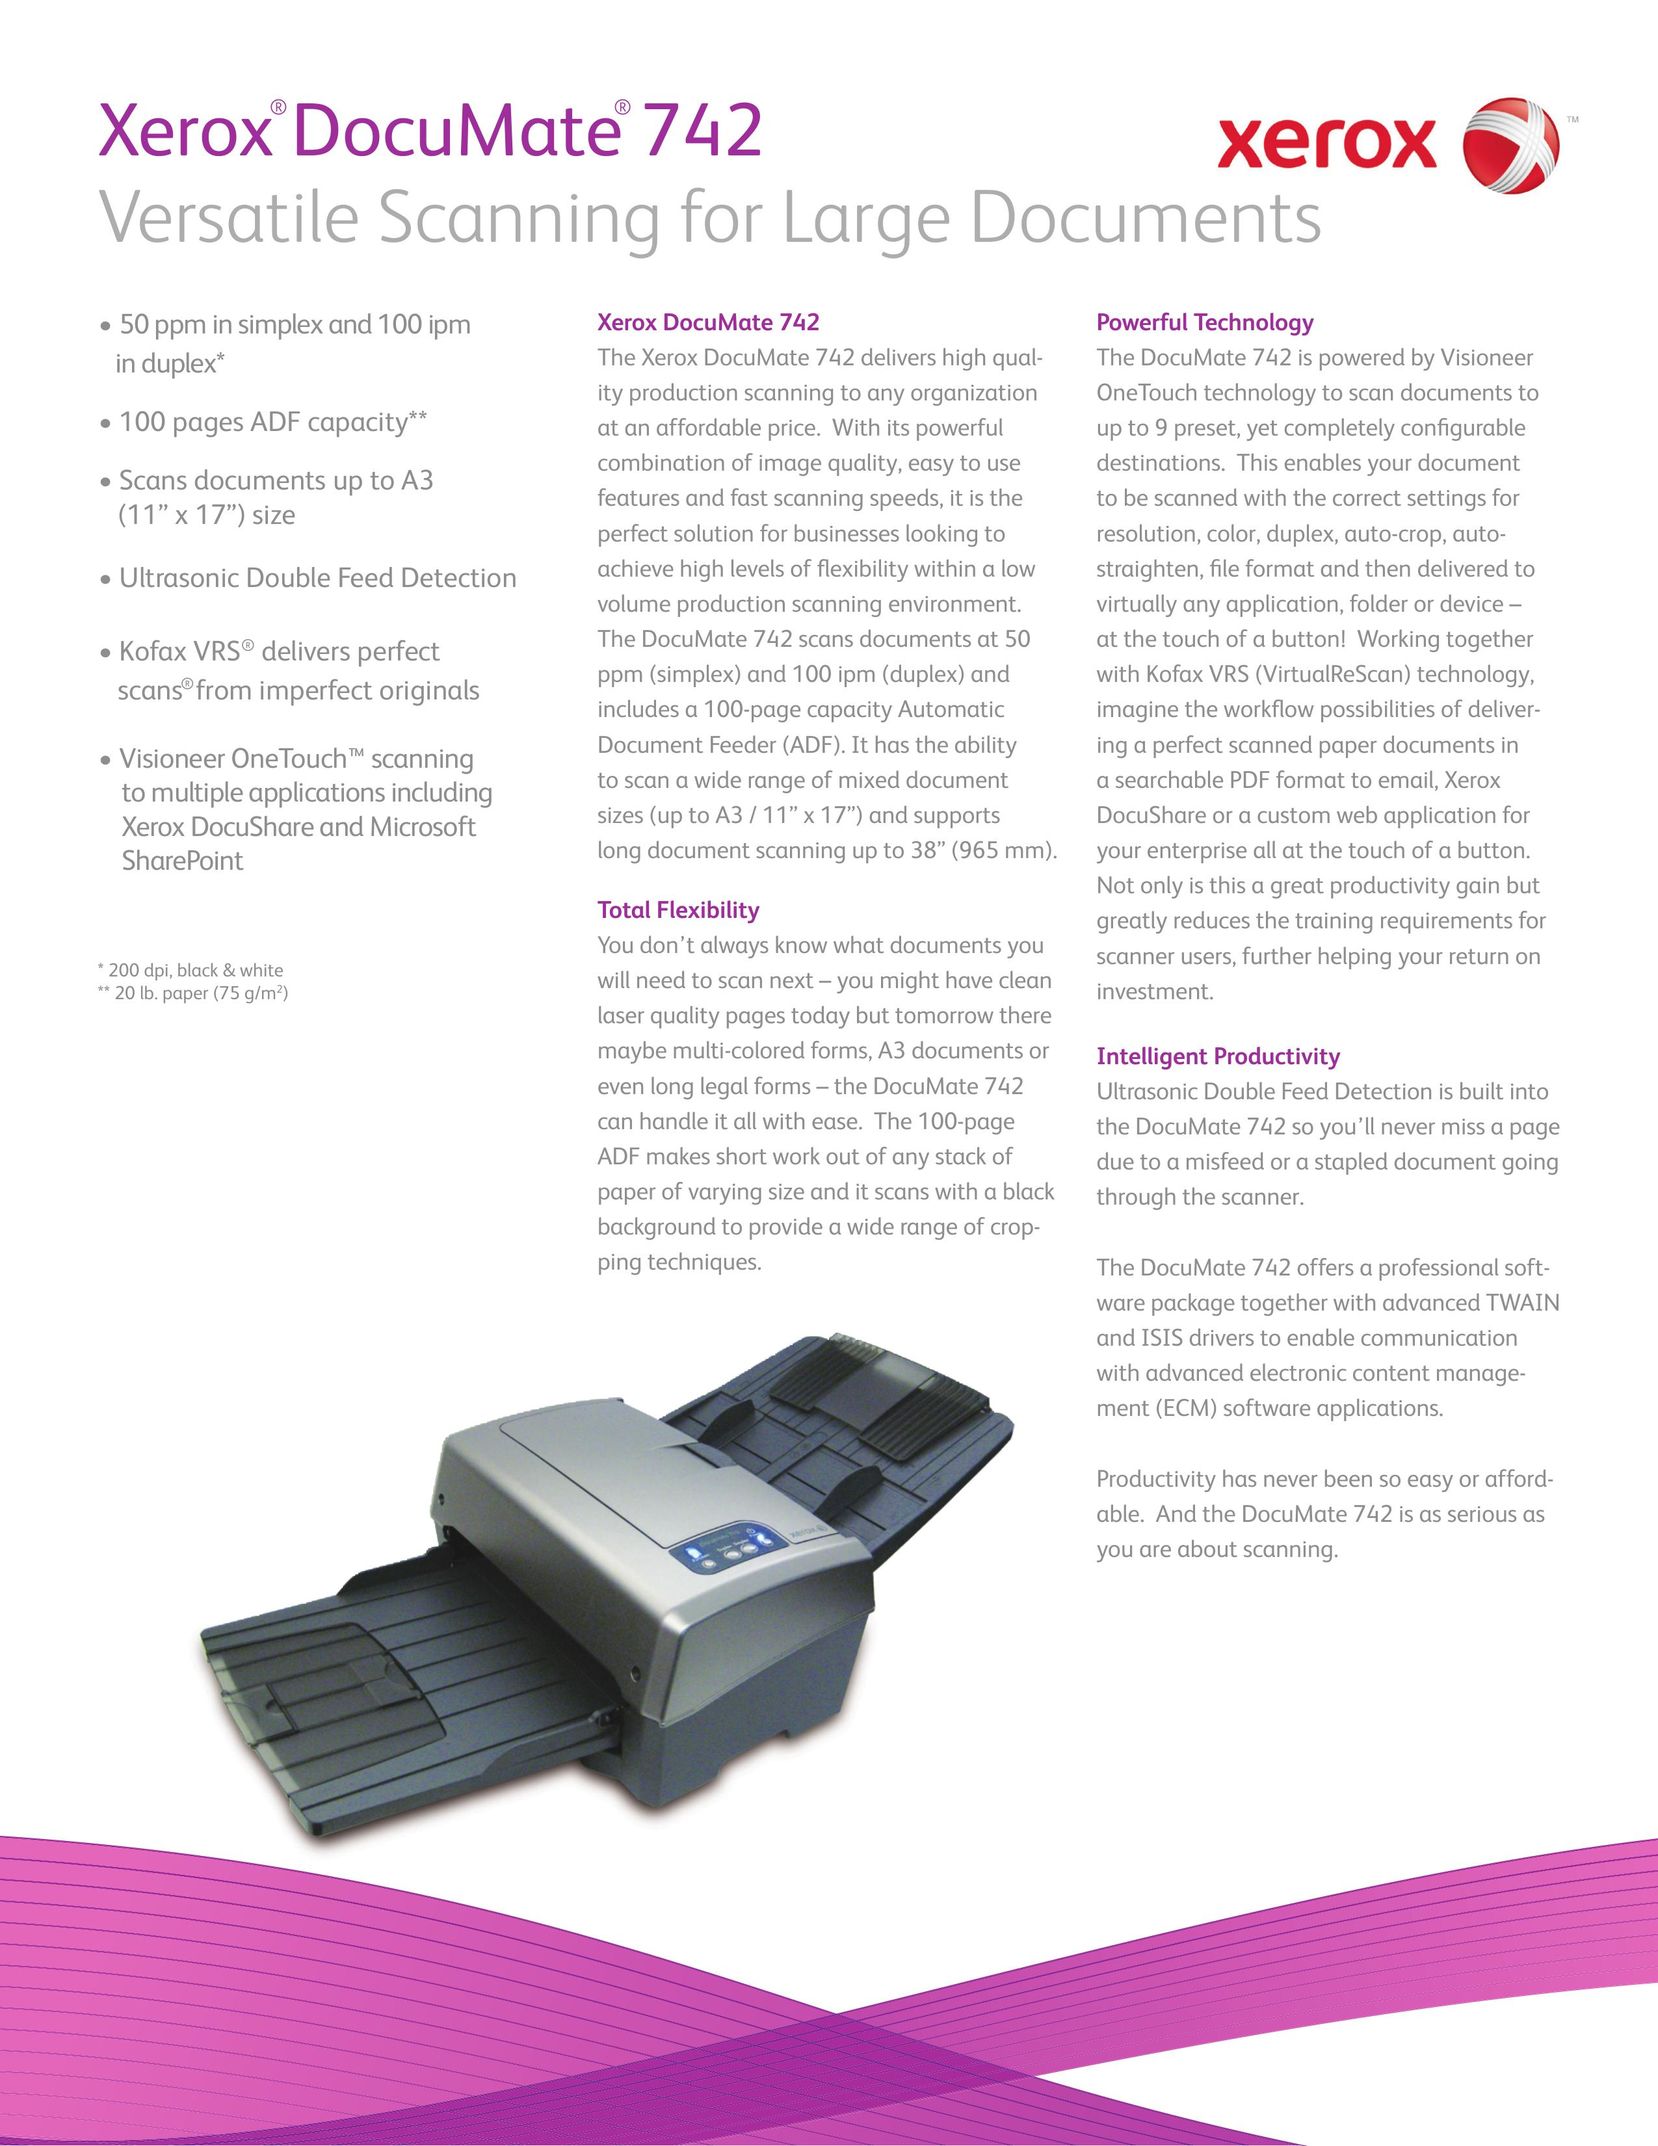 Xerox XDM7425DWU/VP Scanner User Manual